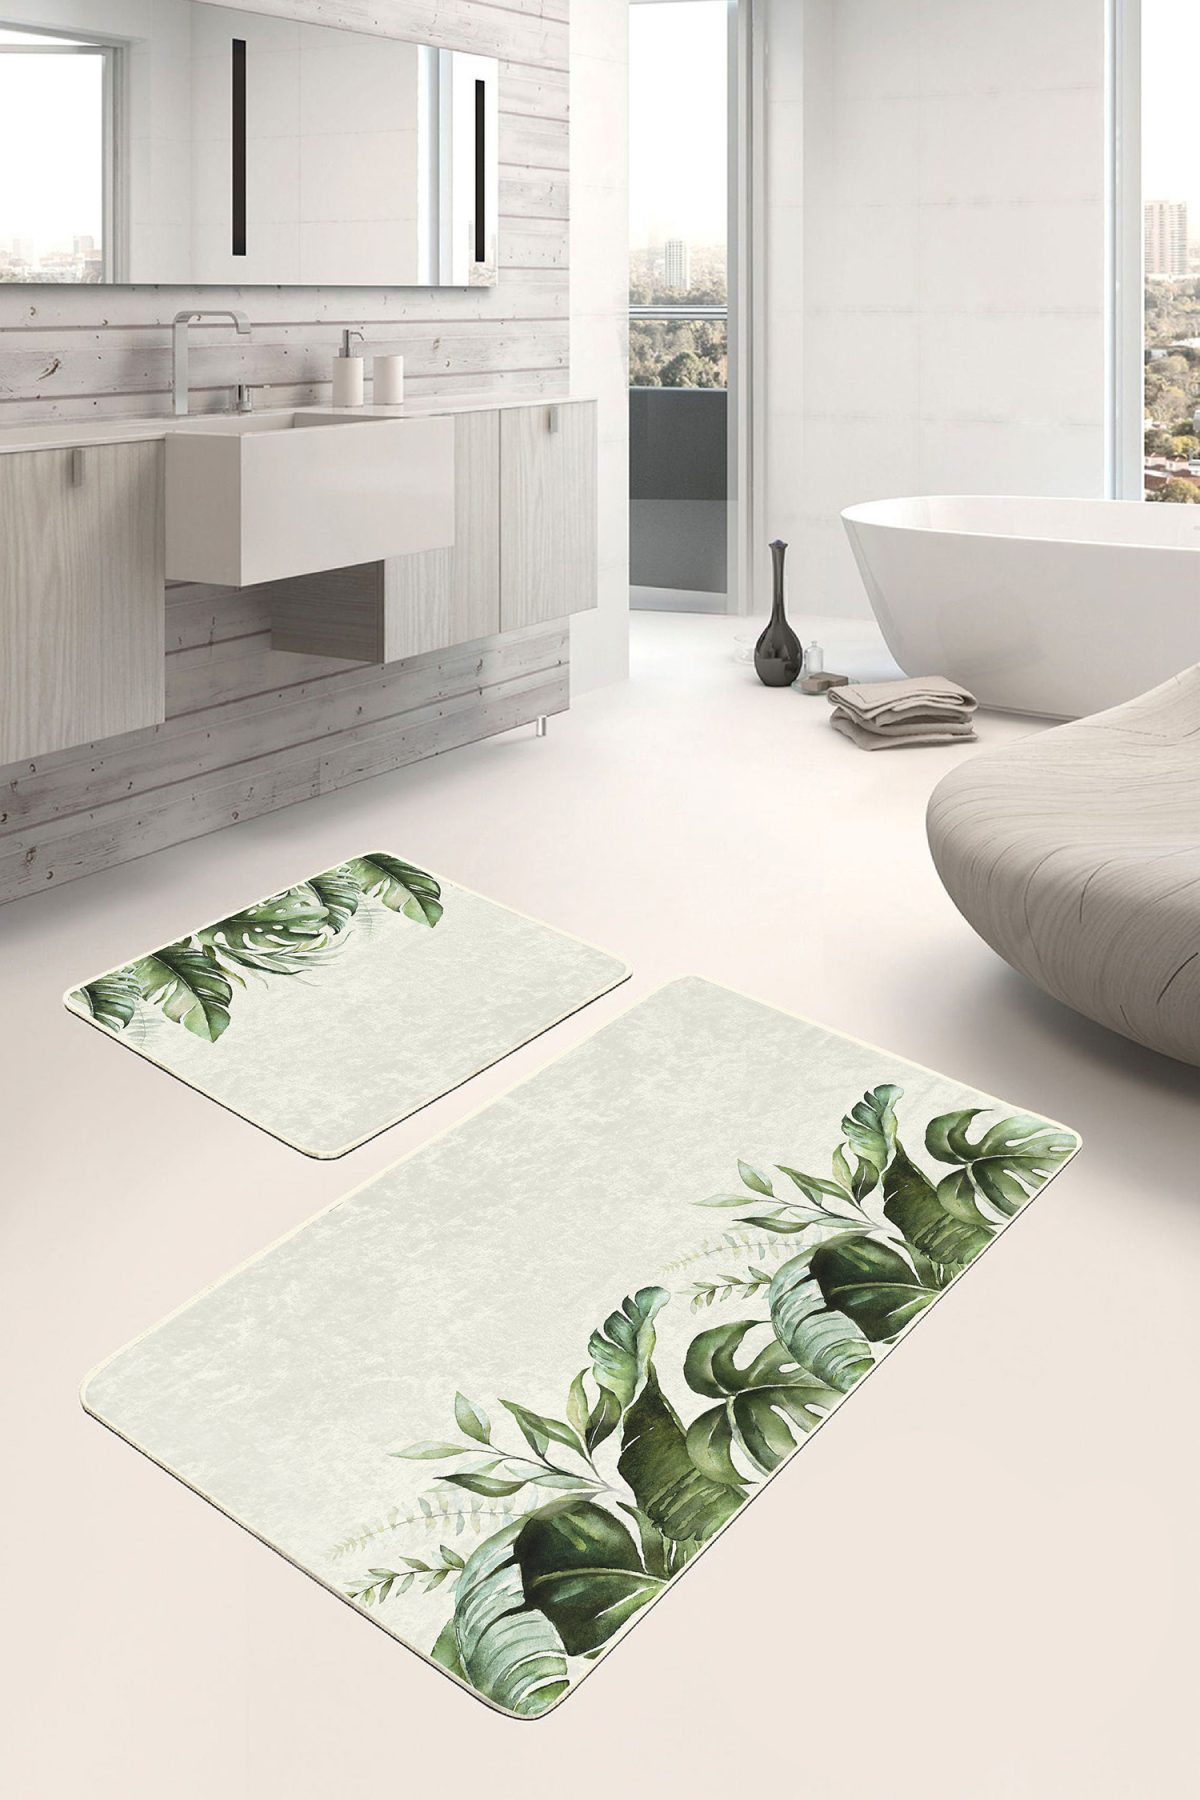 Krem Zeminli Yeşil Tropik Yapraklar Özel Tasarım 2'li Kaymaz Tabanlı Banyo & Mutfak Paspas Takımı Realhomes